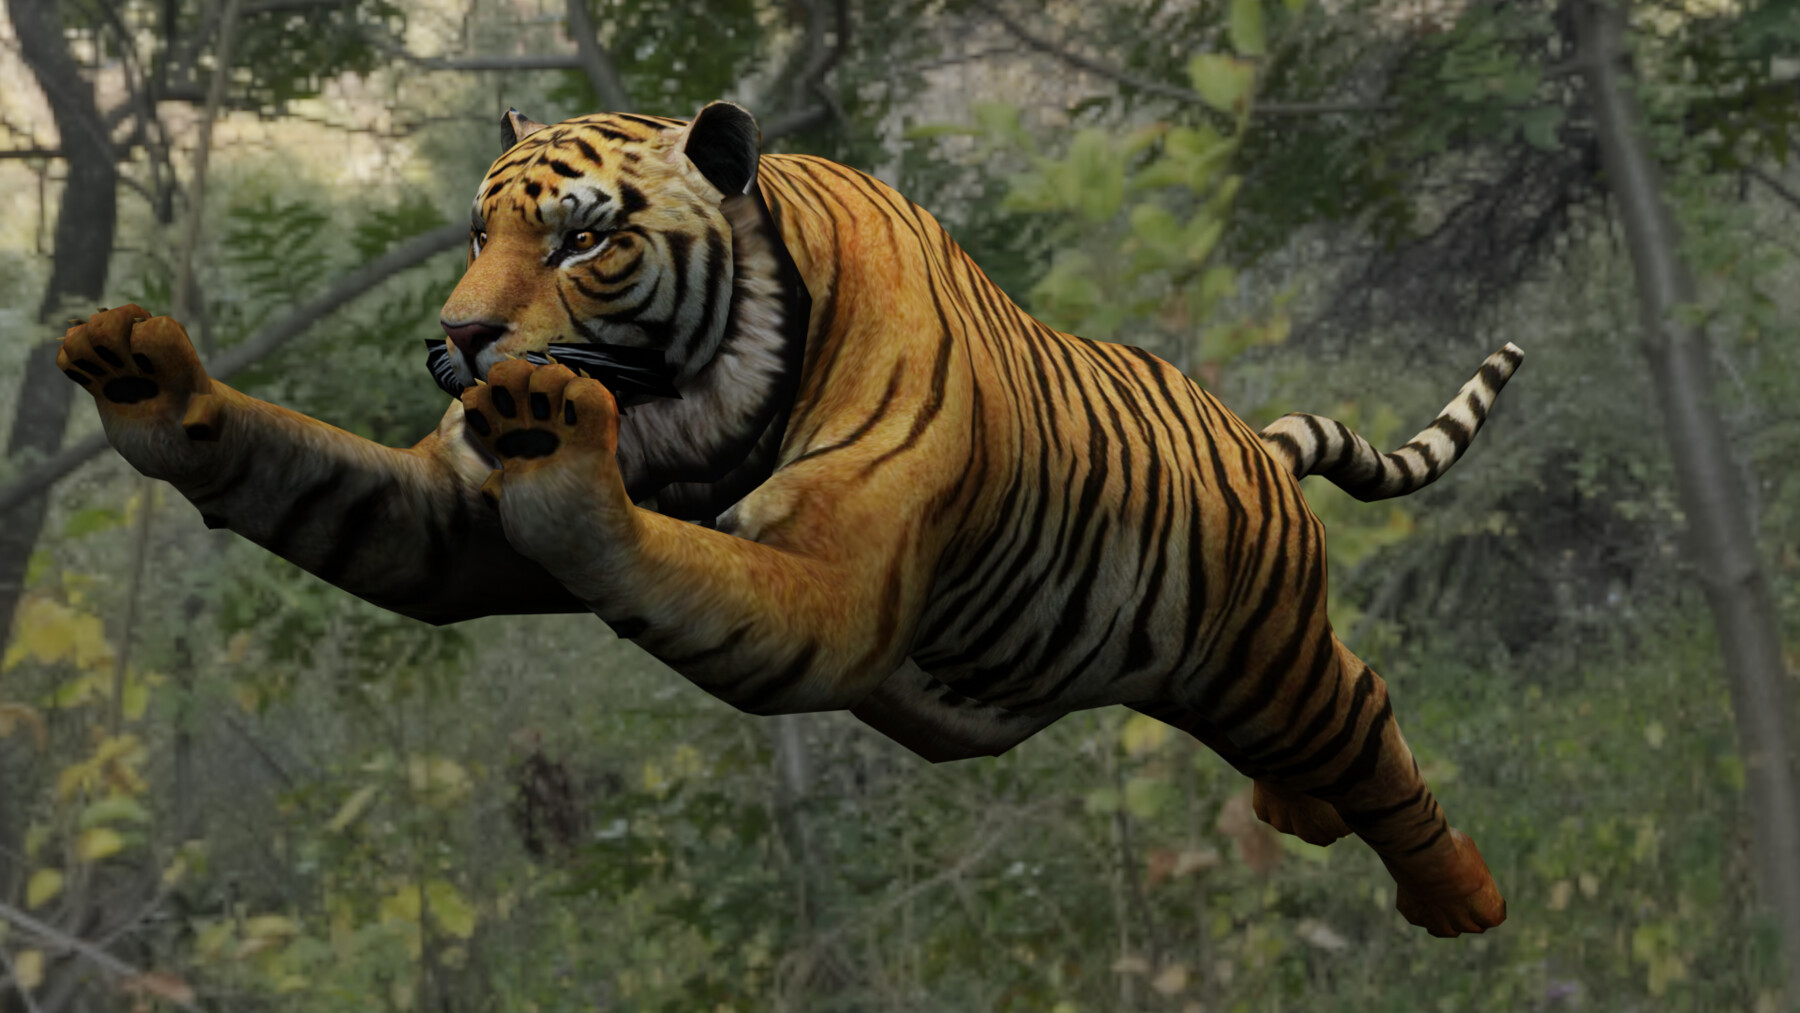 OBJ file TIGER DOWNLOAD Bengal TIGER 3d model animated for blender